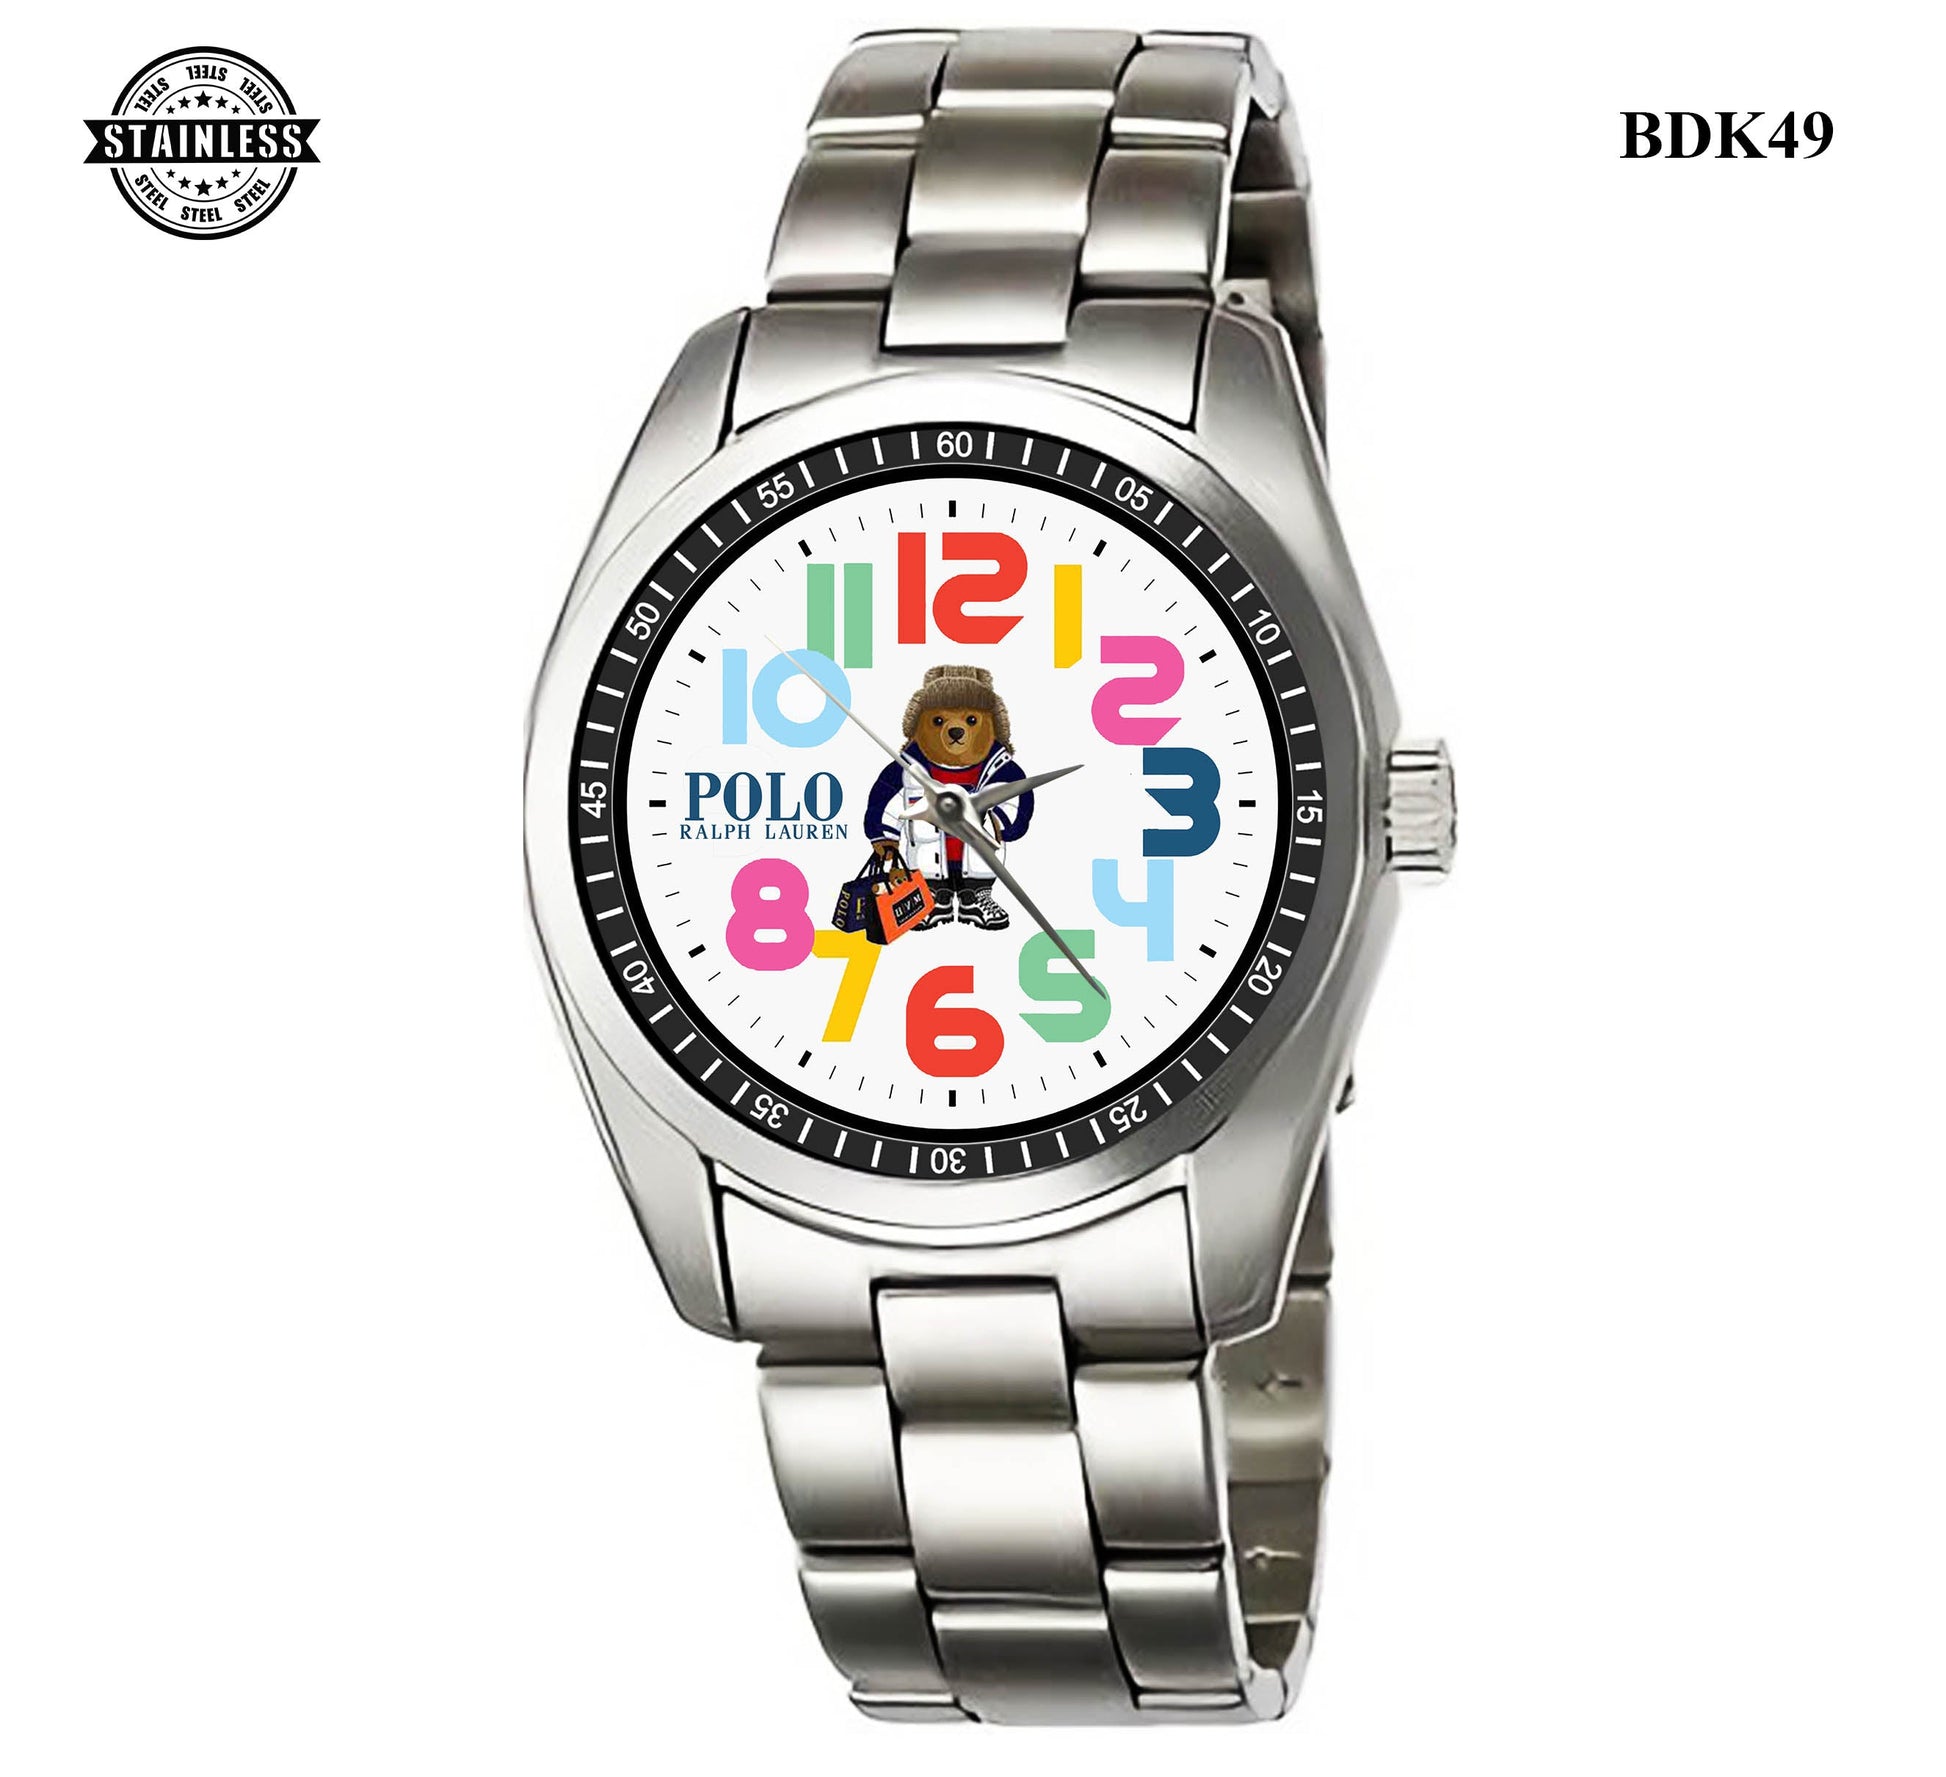 Polo Ralph Lauren Bear Sport Metal Watch Bdk49-3